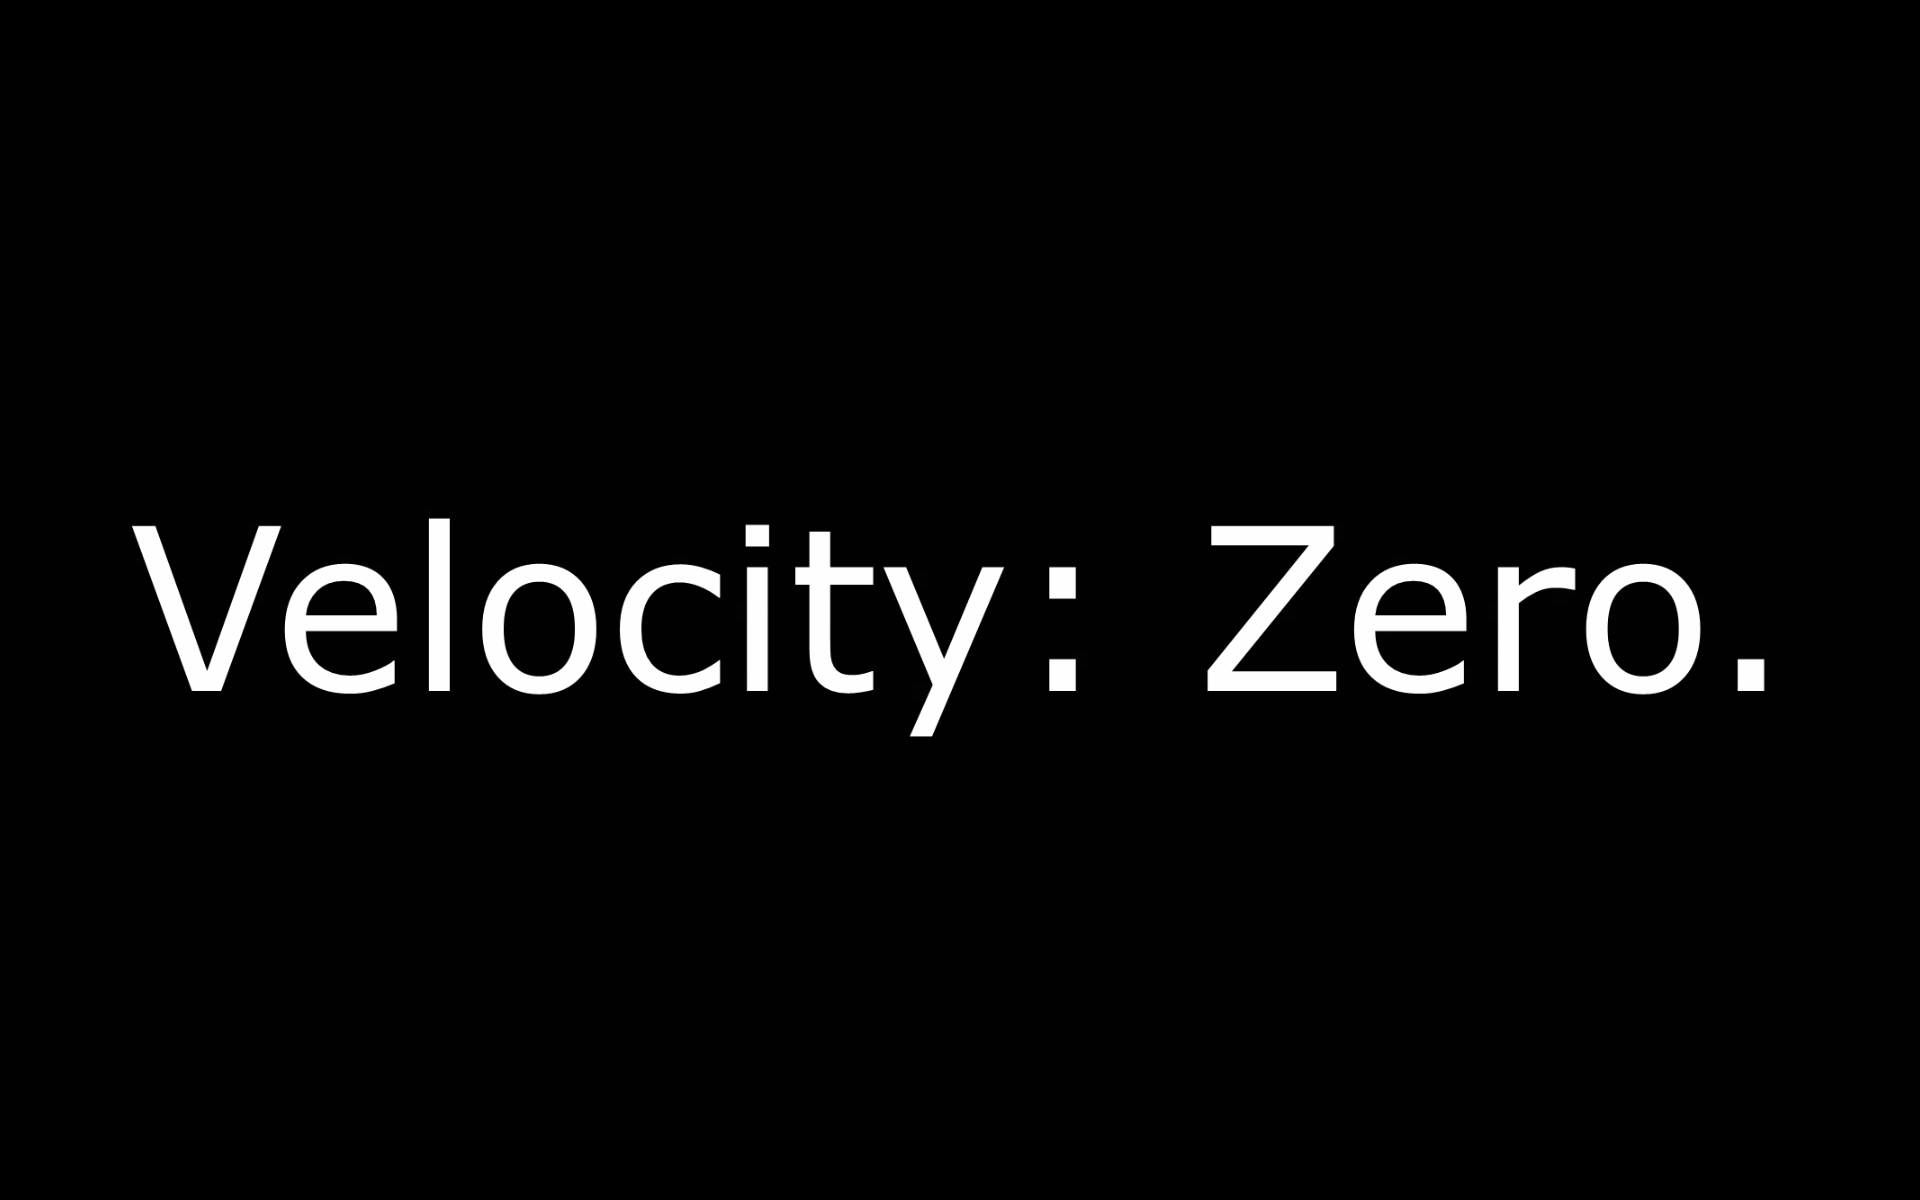 Velocity: Zero [perception experiment]